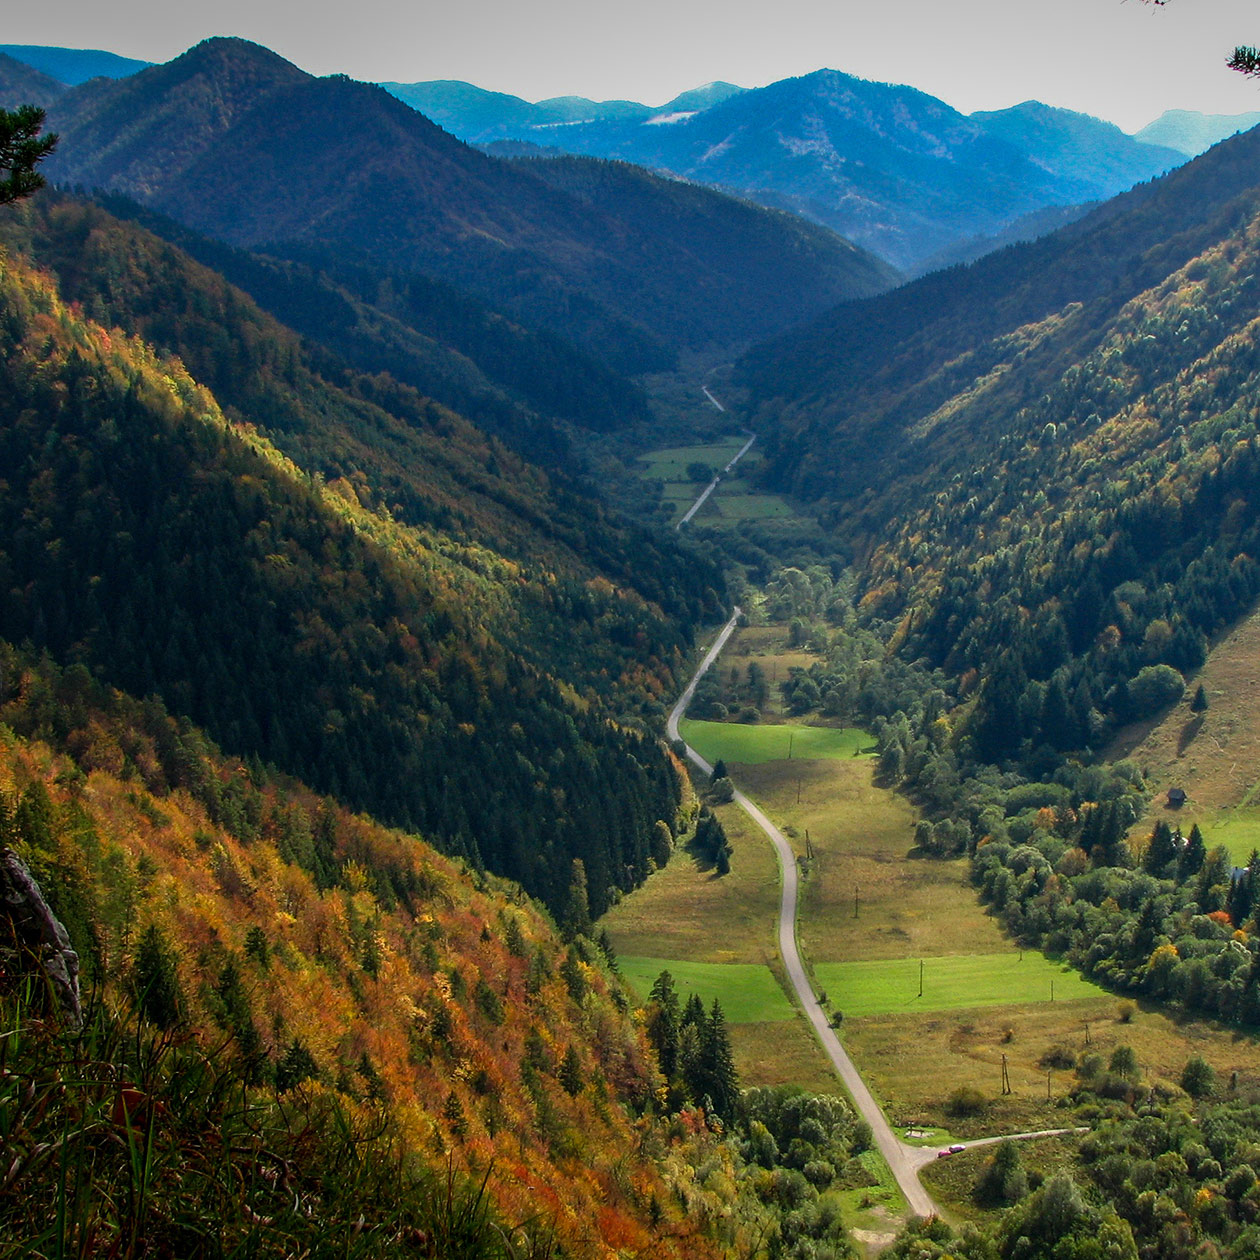 Ľubochnianska Valley